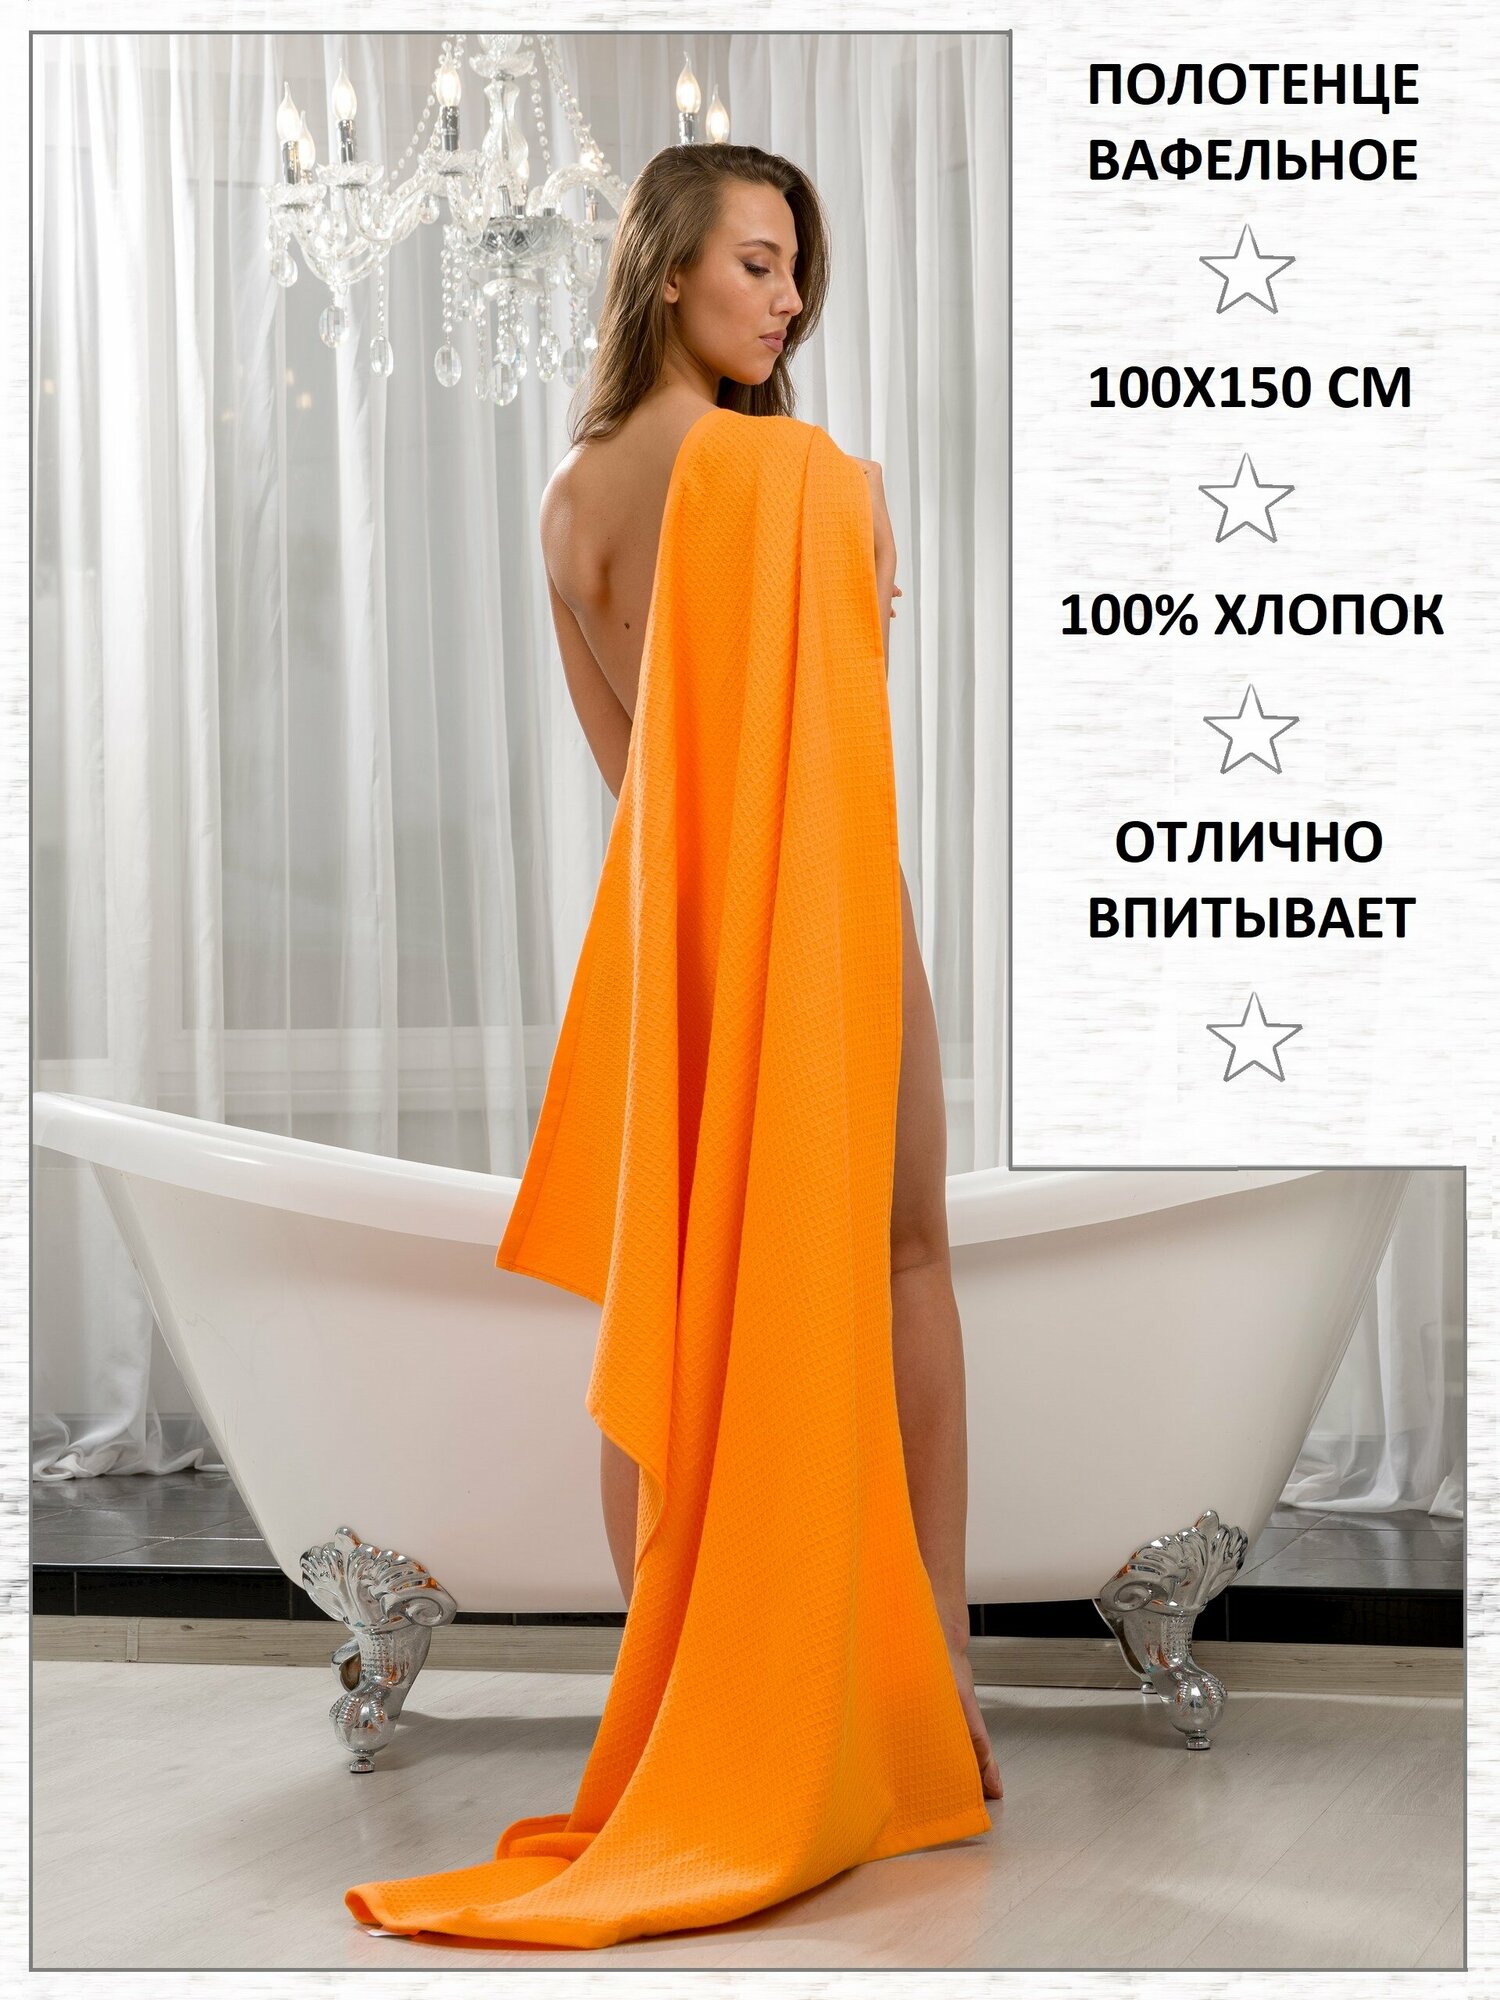 Полотенце BIO-TEXTILES вафельное 100*150 оранжевое банное домашнее пляжное 100% хлопок банная простынь